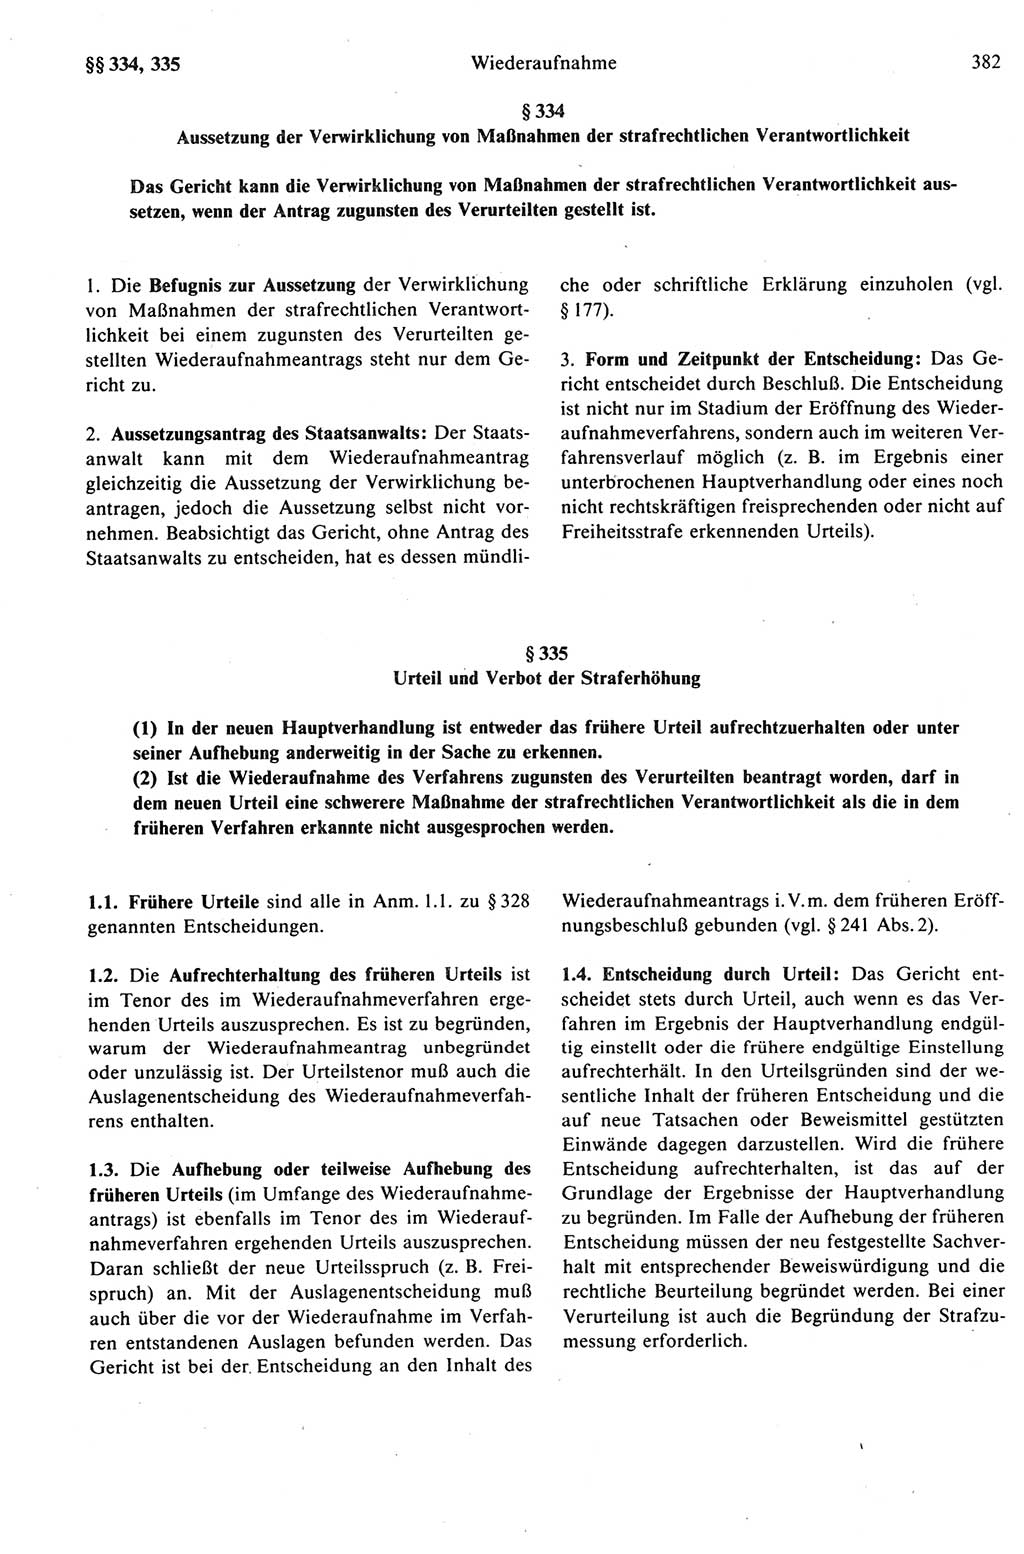 Strafprozeßrecht der DDR (Deutsche Demokratische Republik), Kommentar zur Strafprozeßordnung (StPO) 1989, Seite 382 (Strafprozeßr. DDR Komm. StPO 1989, S. 382)